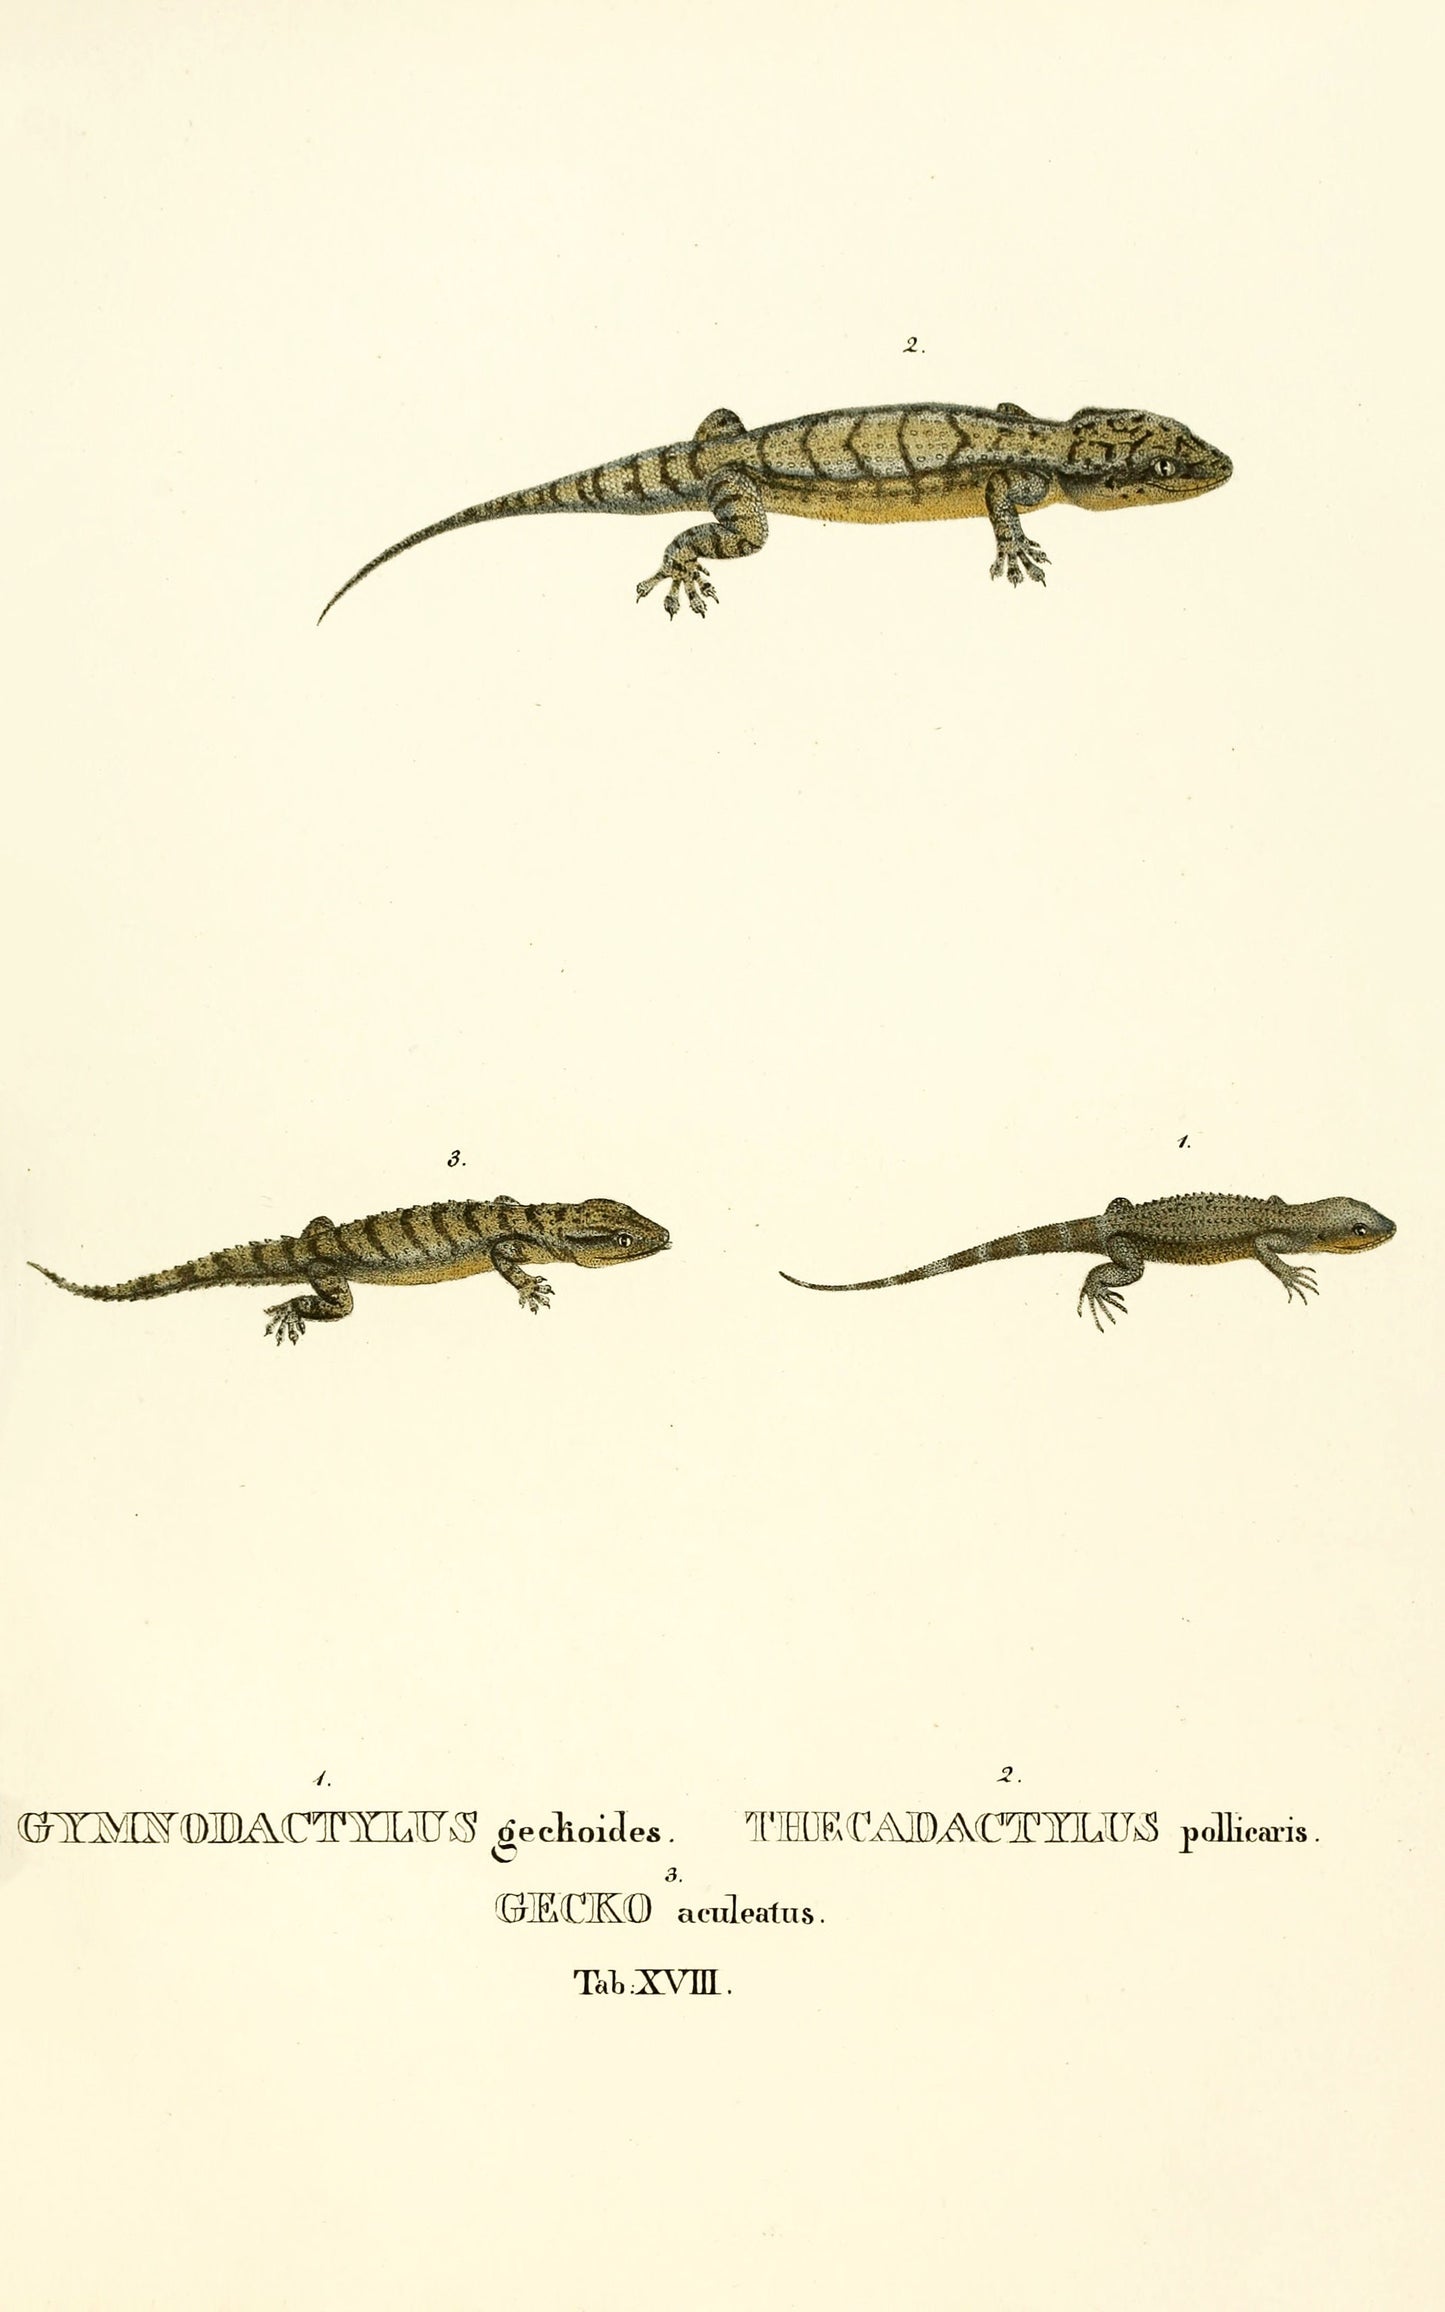 Selected Species of Brazilian Lizards [30 Images]